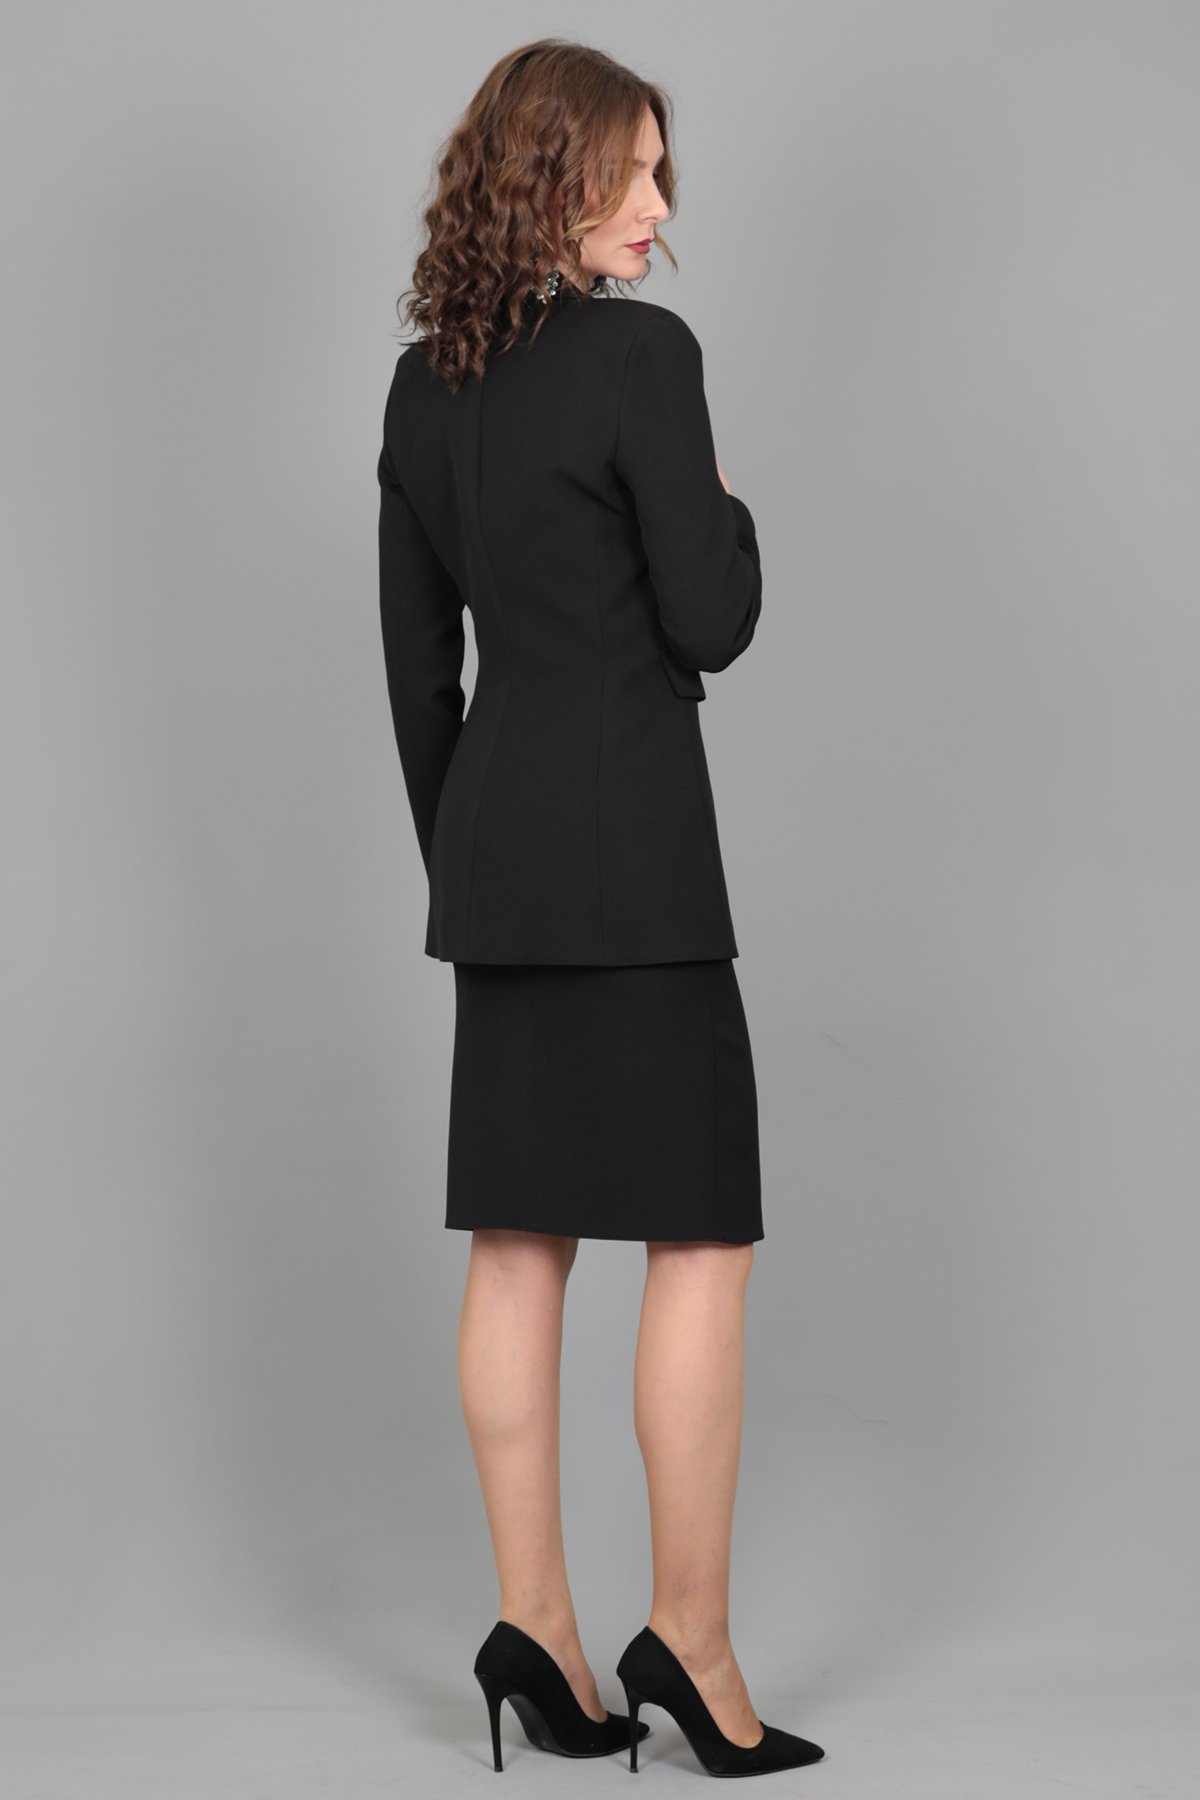 Blazer Ceket & Kalem Etek Takım-Siyah - Önder Özsoy | Ofis Giyim | Yeni  Sezon